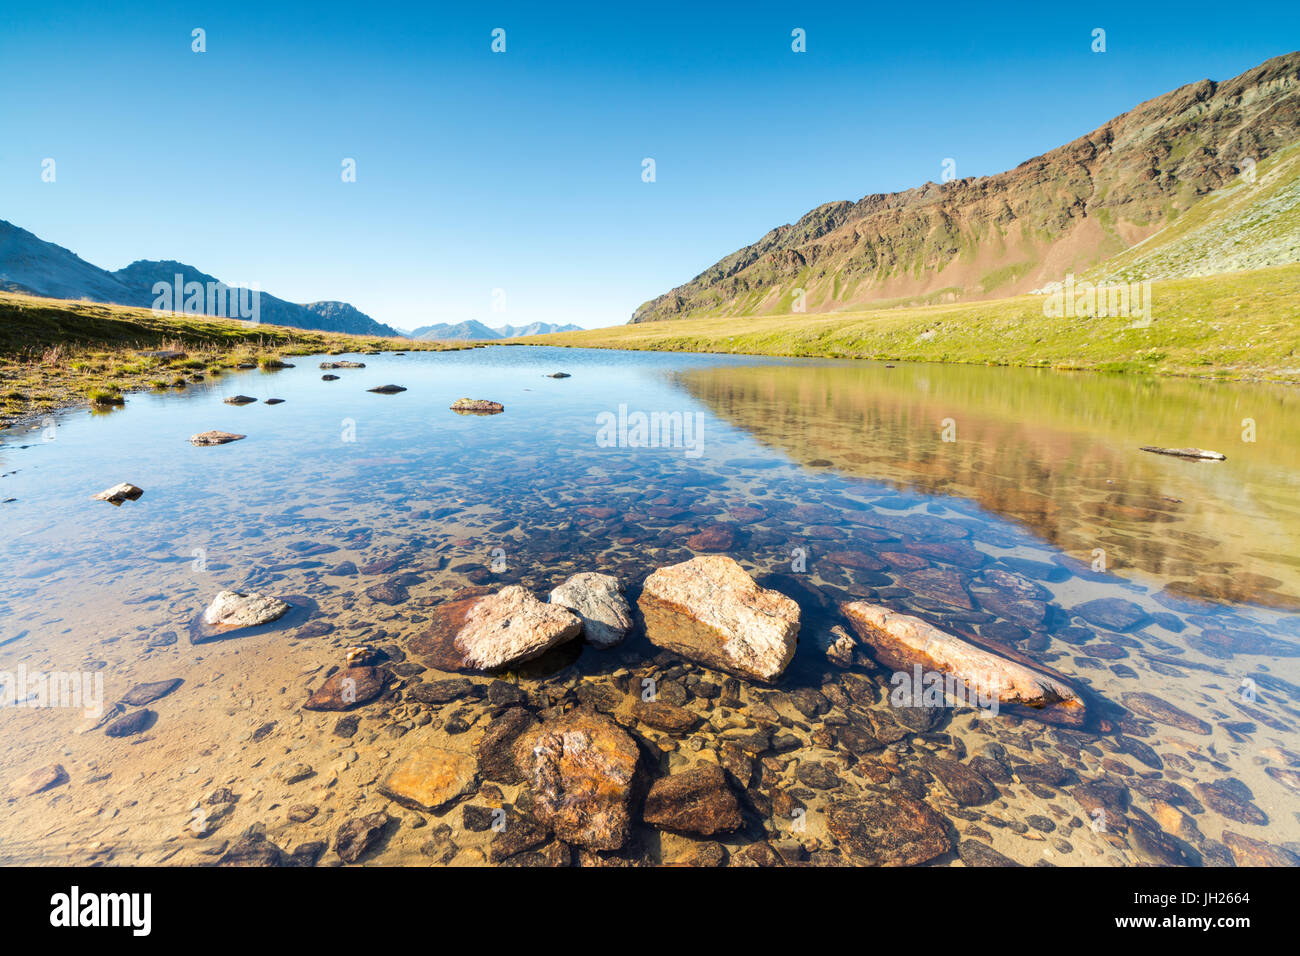 Sole splende sui picchi rocciosi si riflette nelle limpide acque del lago Umbrail, Passo Stelvio, Valtellina, Lombardia, Italia, Europa Foto Stock